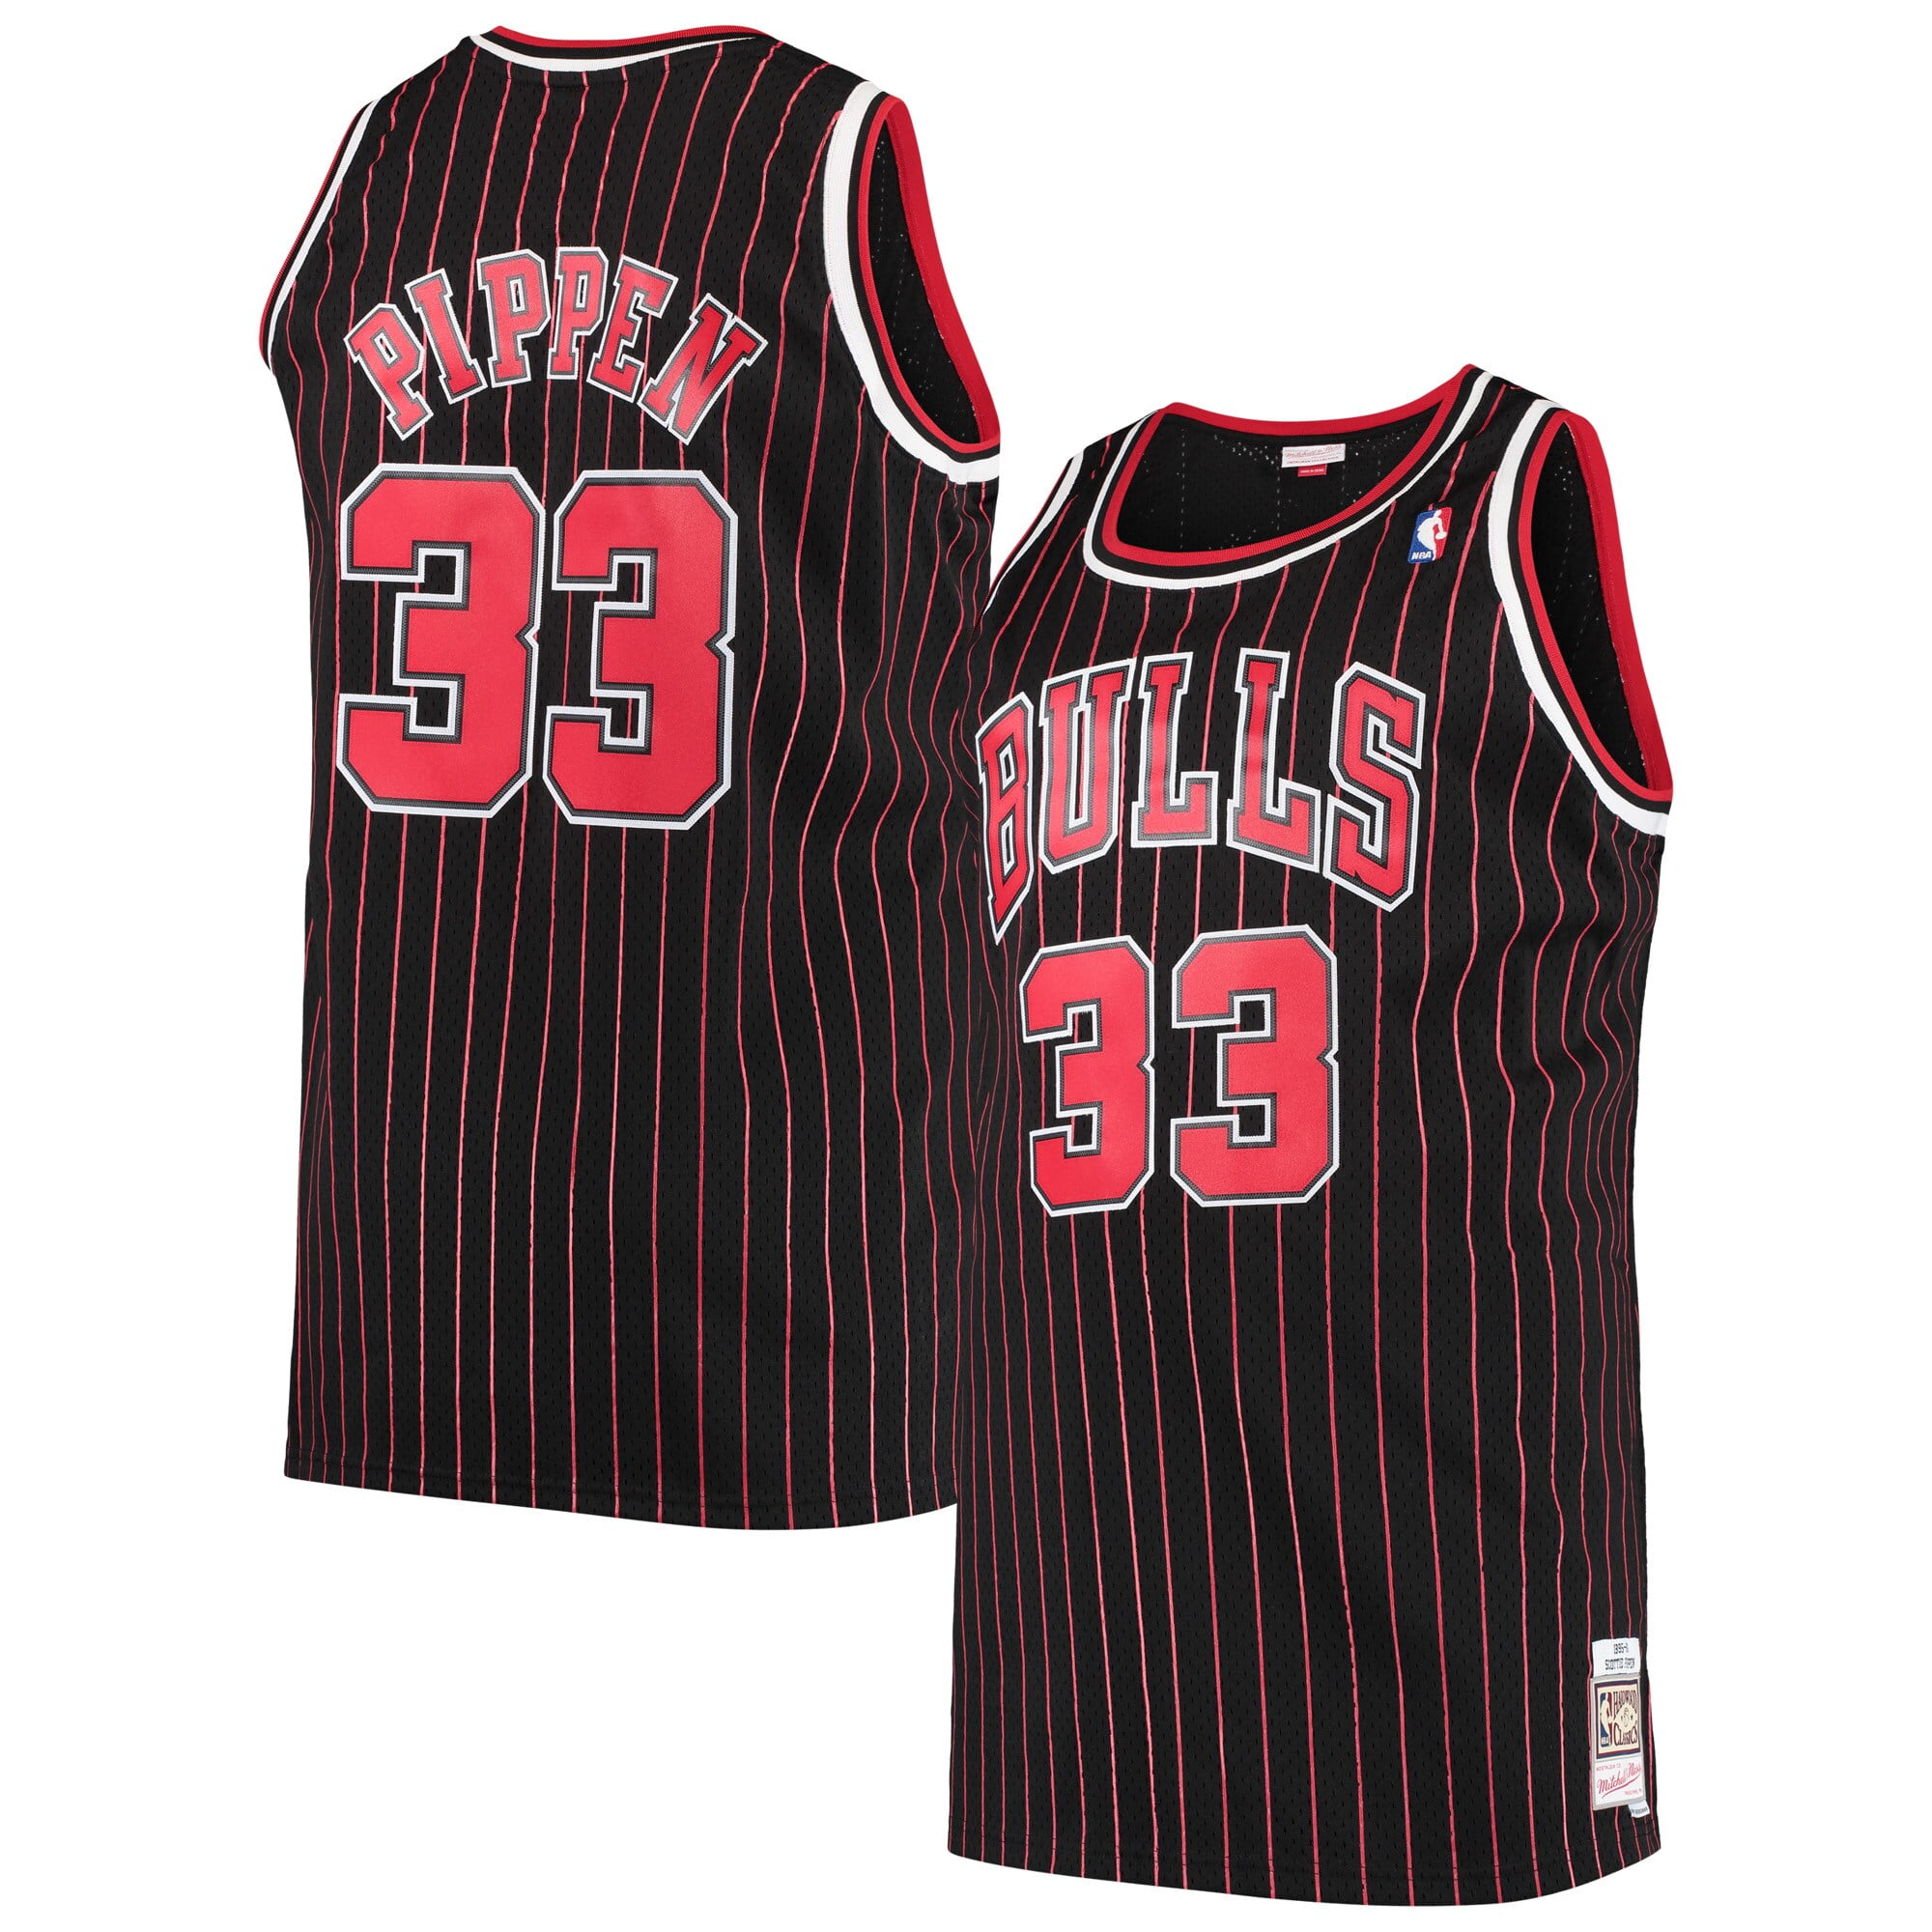 Scottie Pippen Chicago Bulls Mitchell 